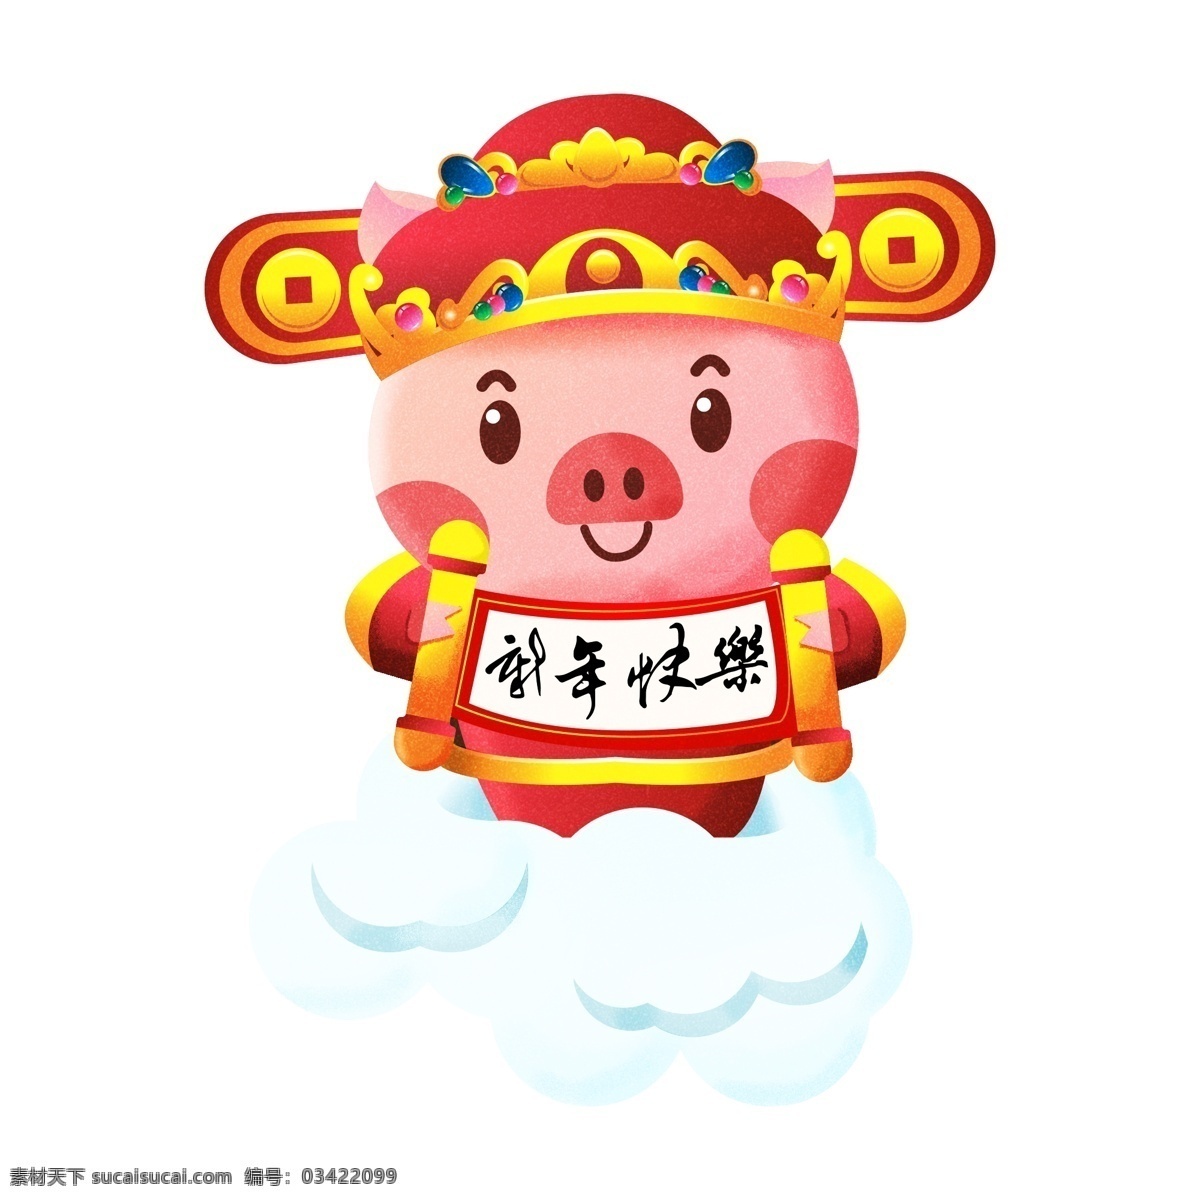 2019 春节 猪年 可爱 喜庆 原创 新年 生肖 猪 财神 过年